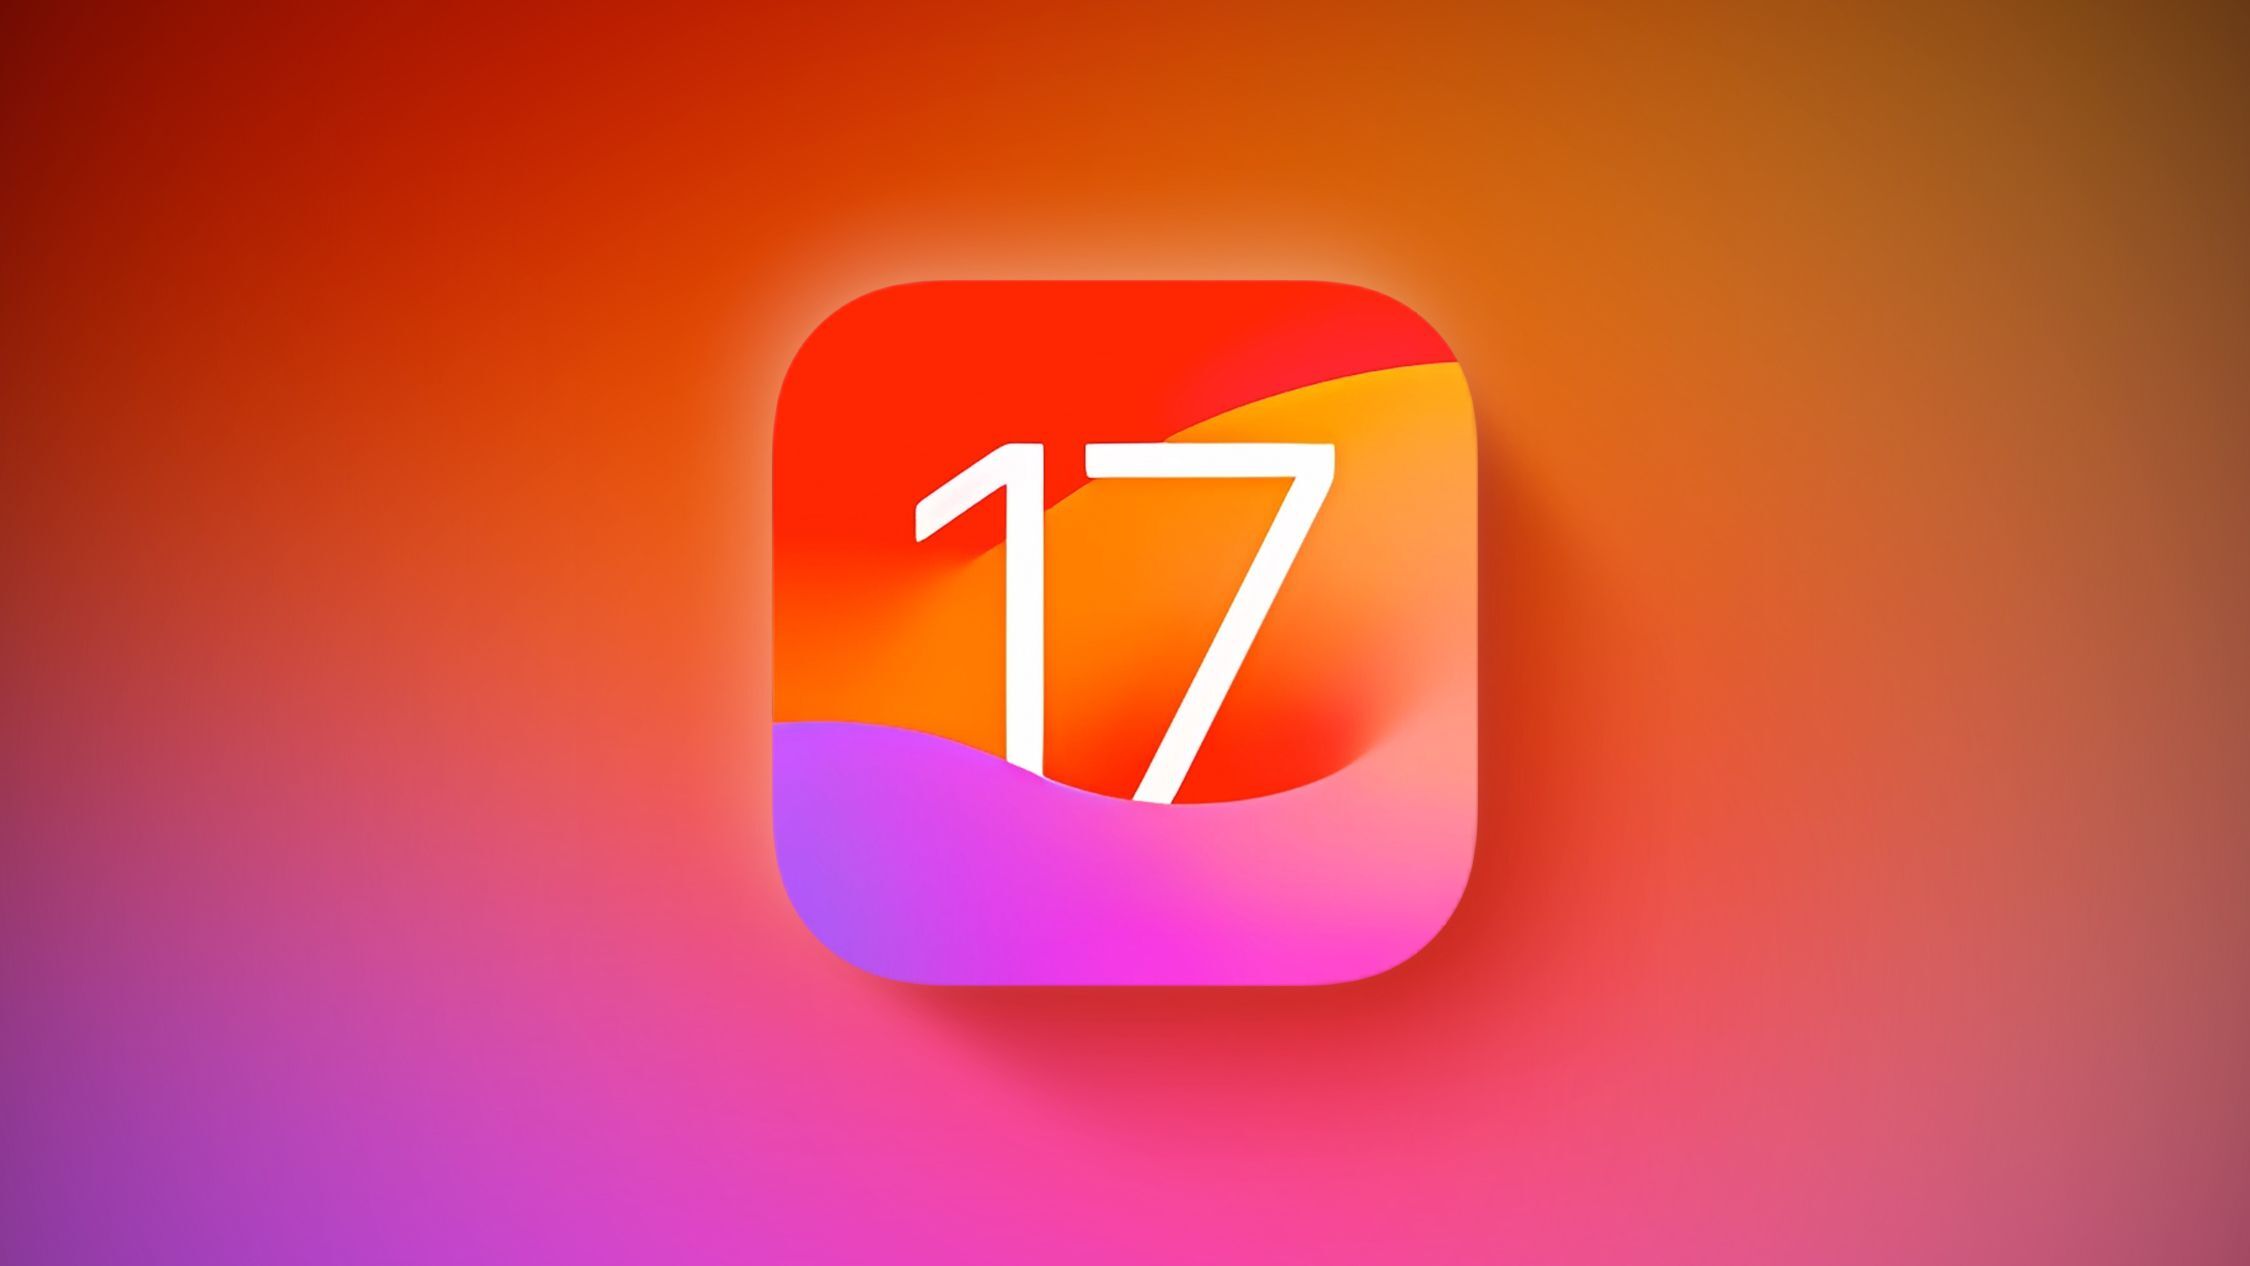    iOS 17,  iPhone     